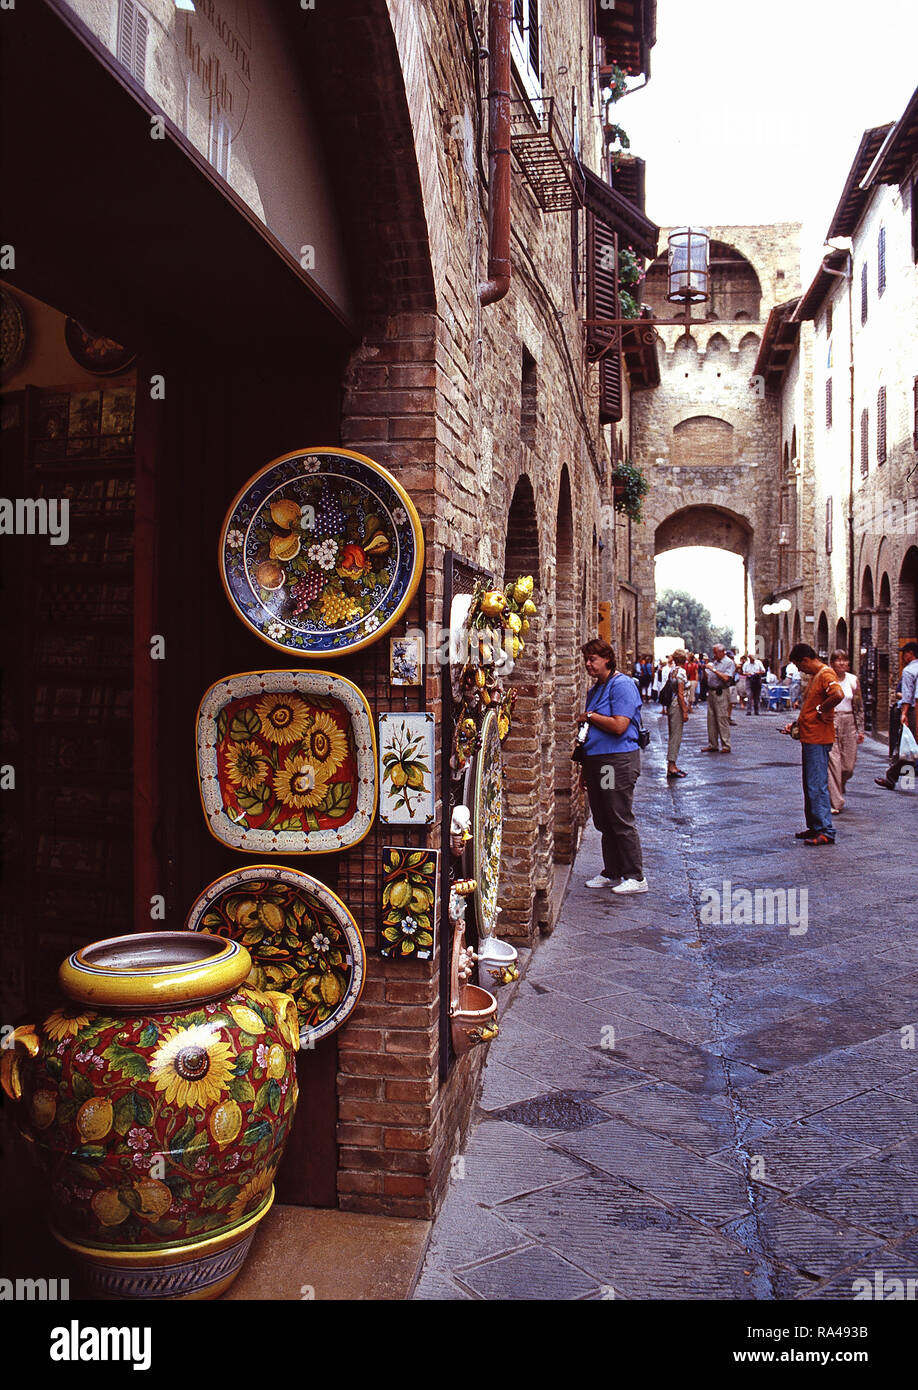 Ceramics for sale,San Gimignano,Italy Stock Photo